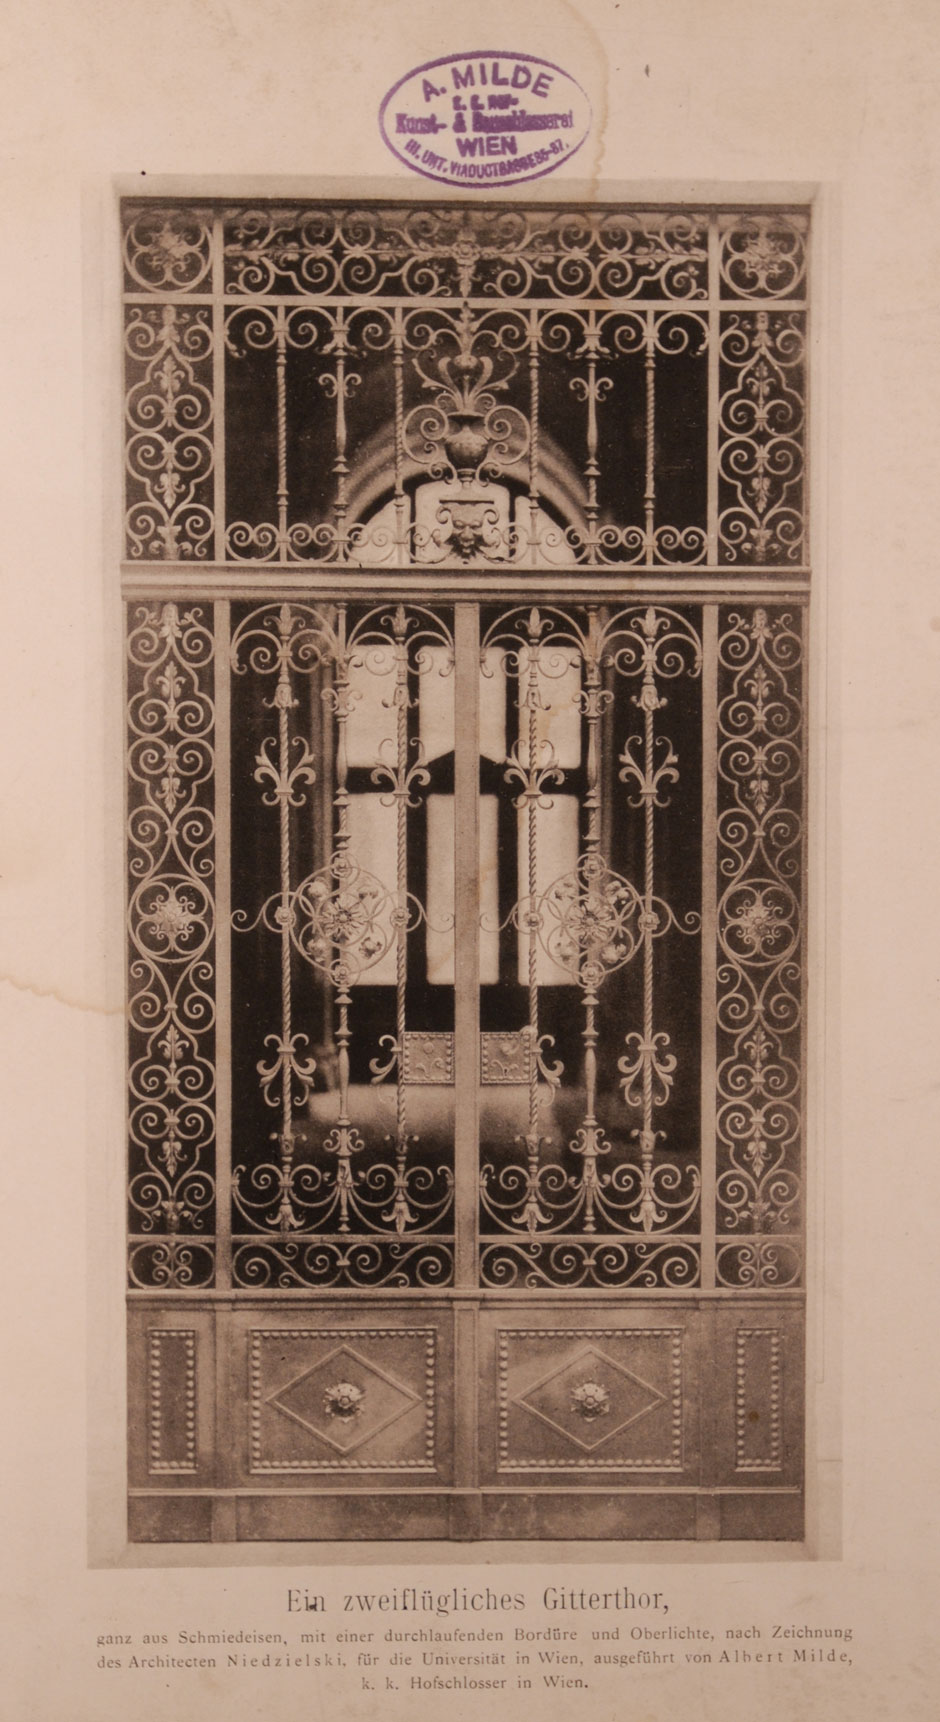 Archivbild: Wiener Universität, schmiedeeisernes zweiflügeliges Neben-Gittertor mit einer durchlaufenden Bordüre und Oberlichte